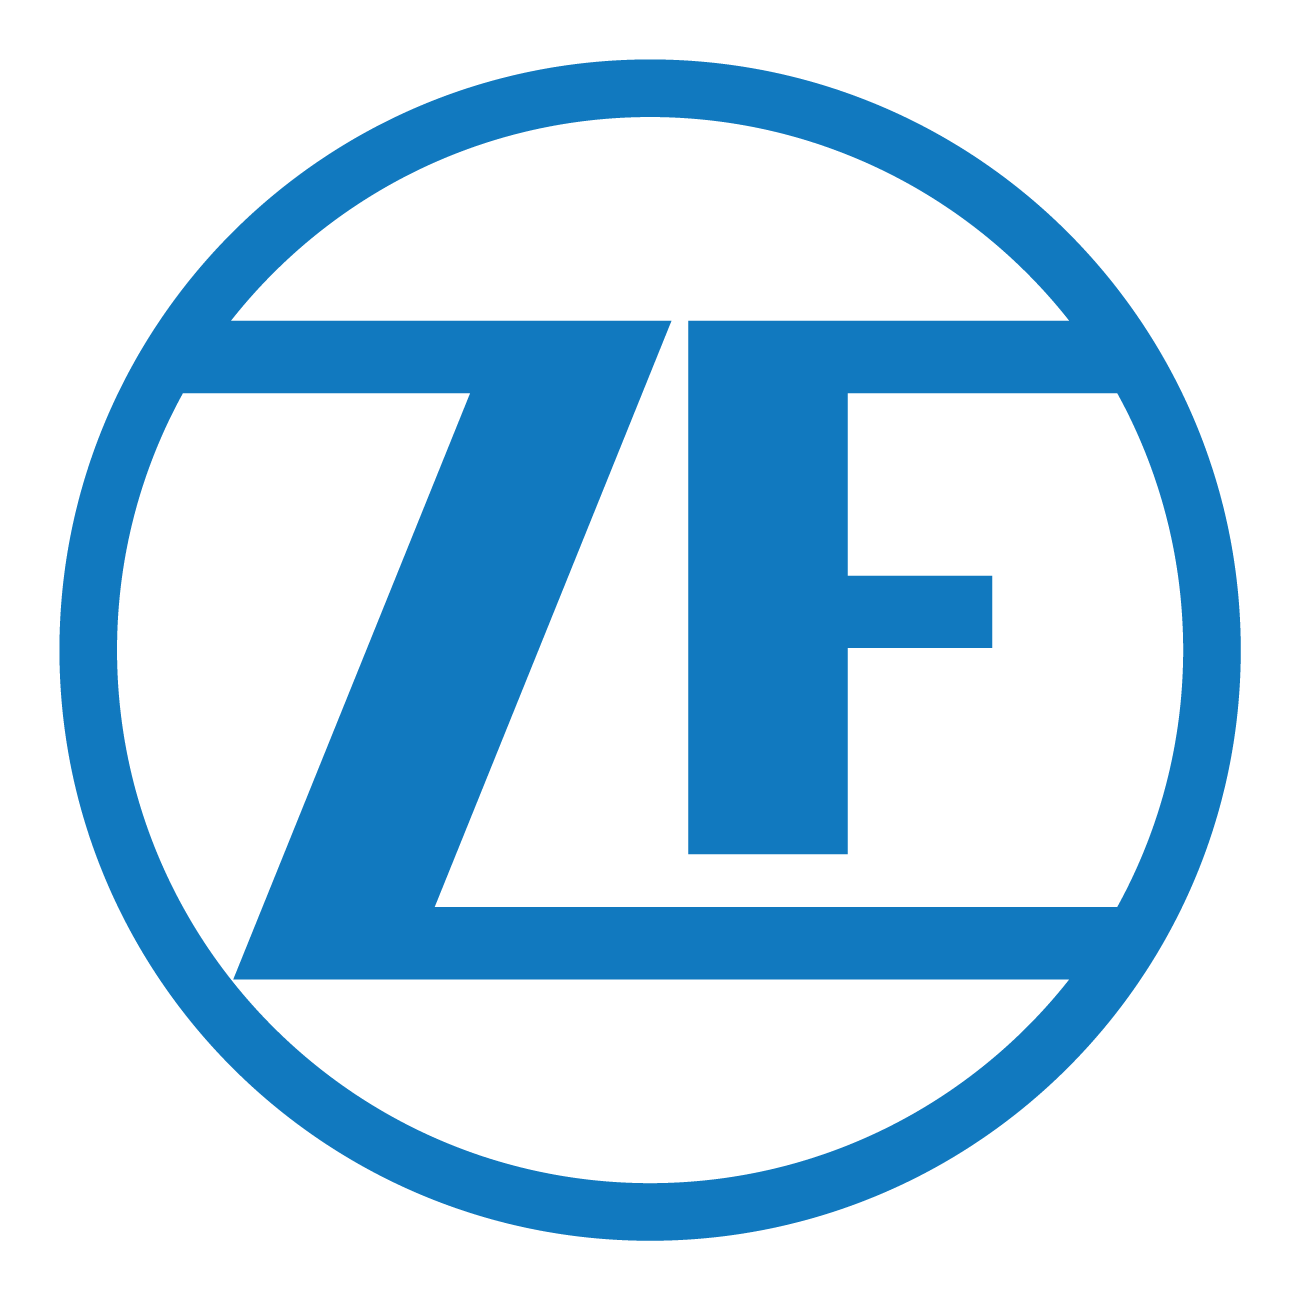 www.zf.com